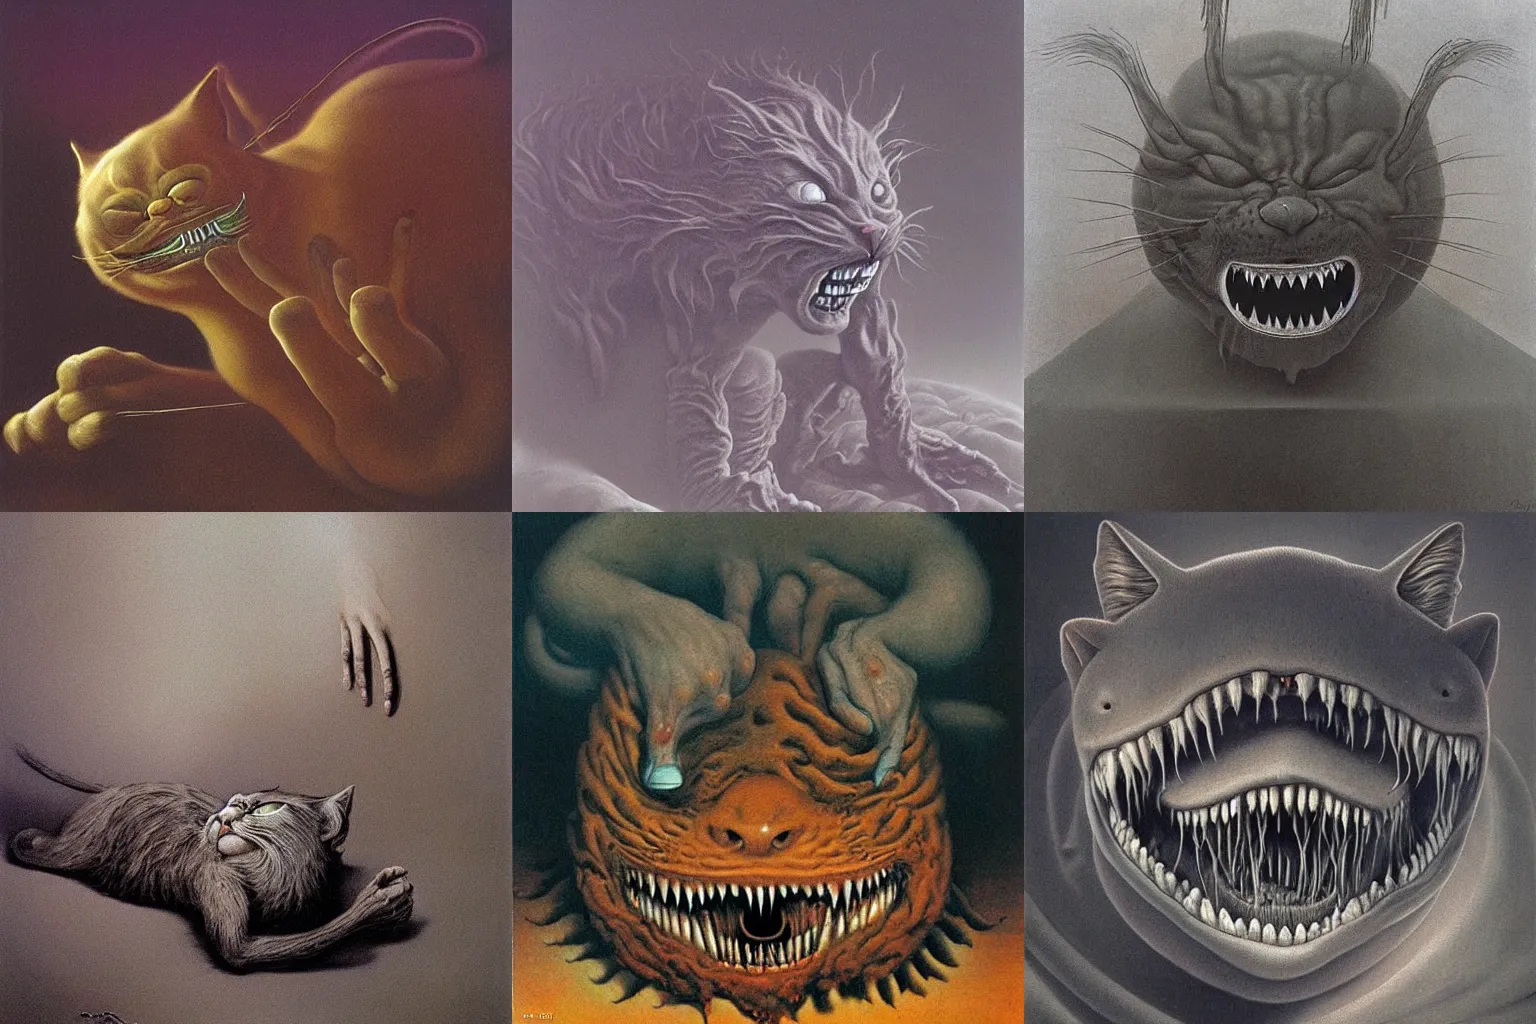 Creepy Garfield  Creepy drawings, Horror art, Cartoon drawings of animals